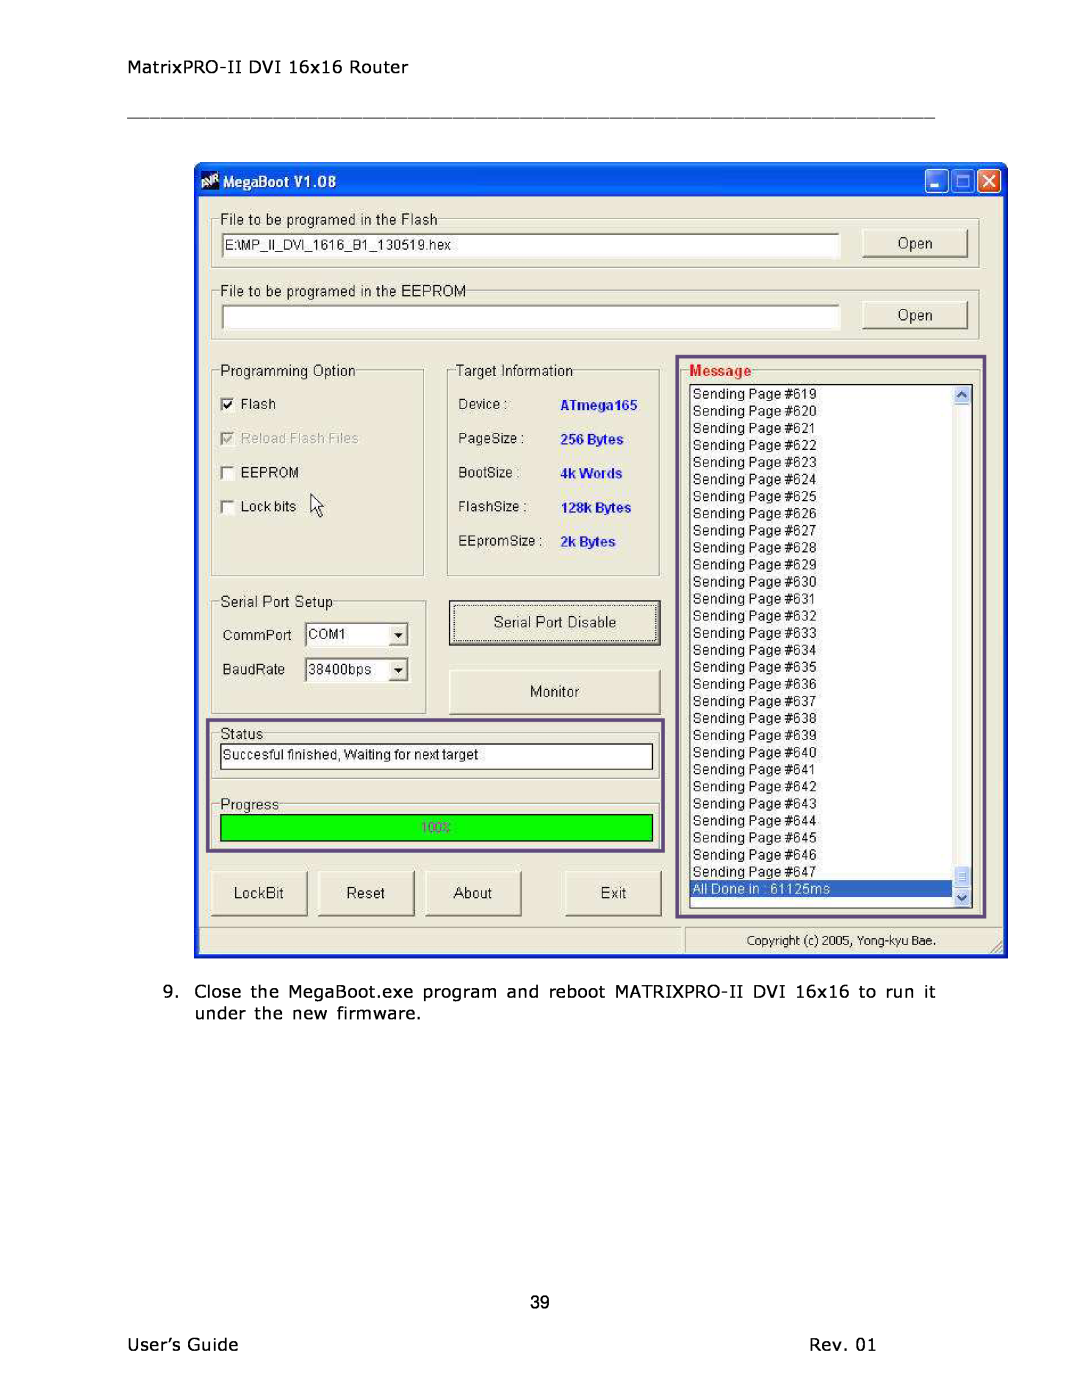 Barco 26-1302001-00 manual MatrixPRO-II DVI 16x16 Router, User’s Guide 